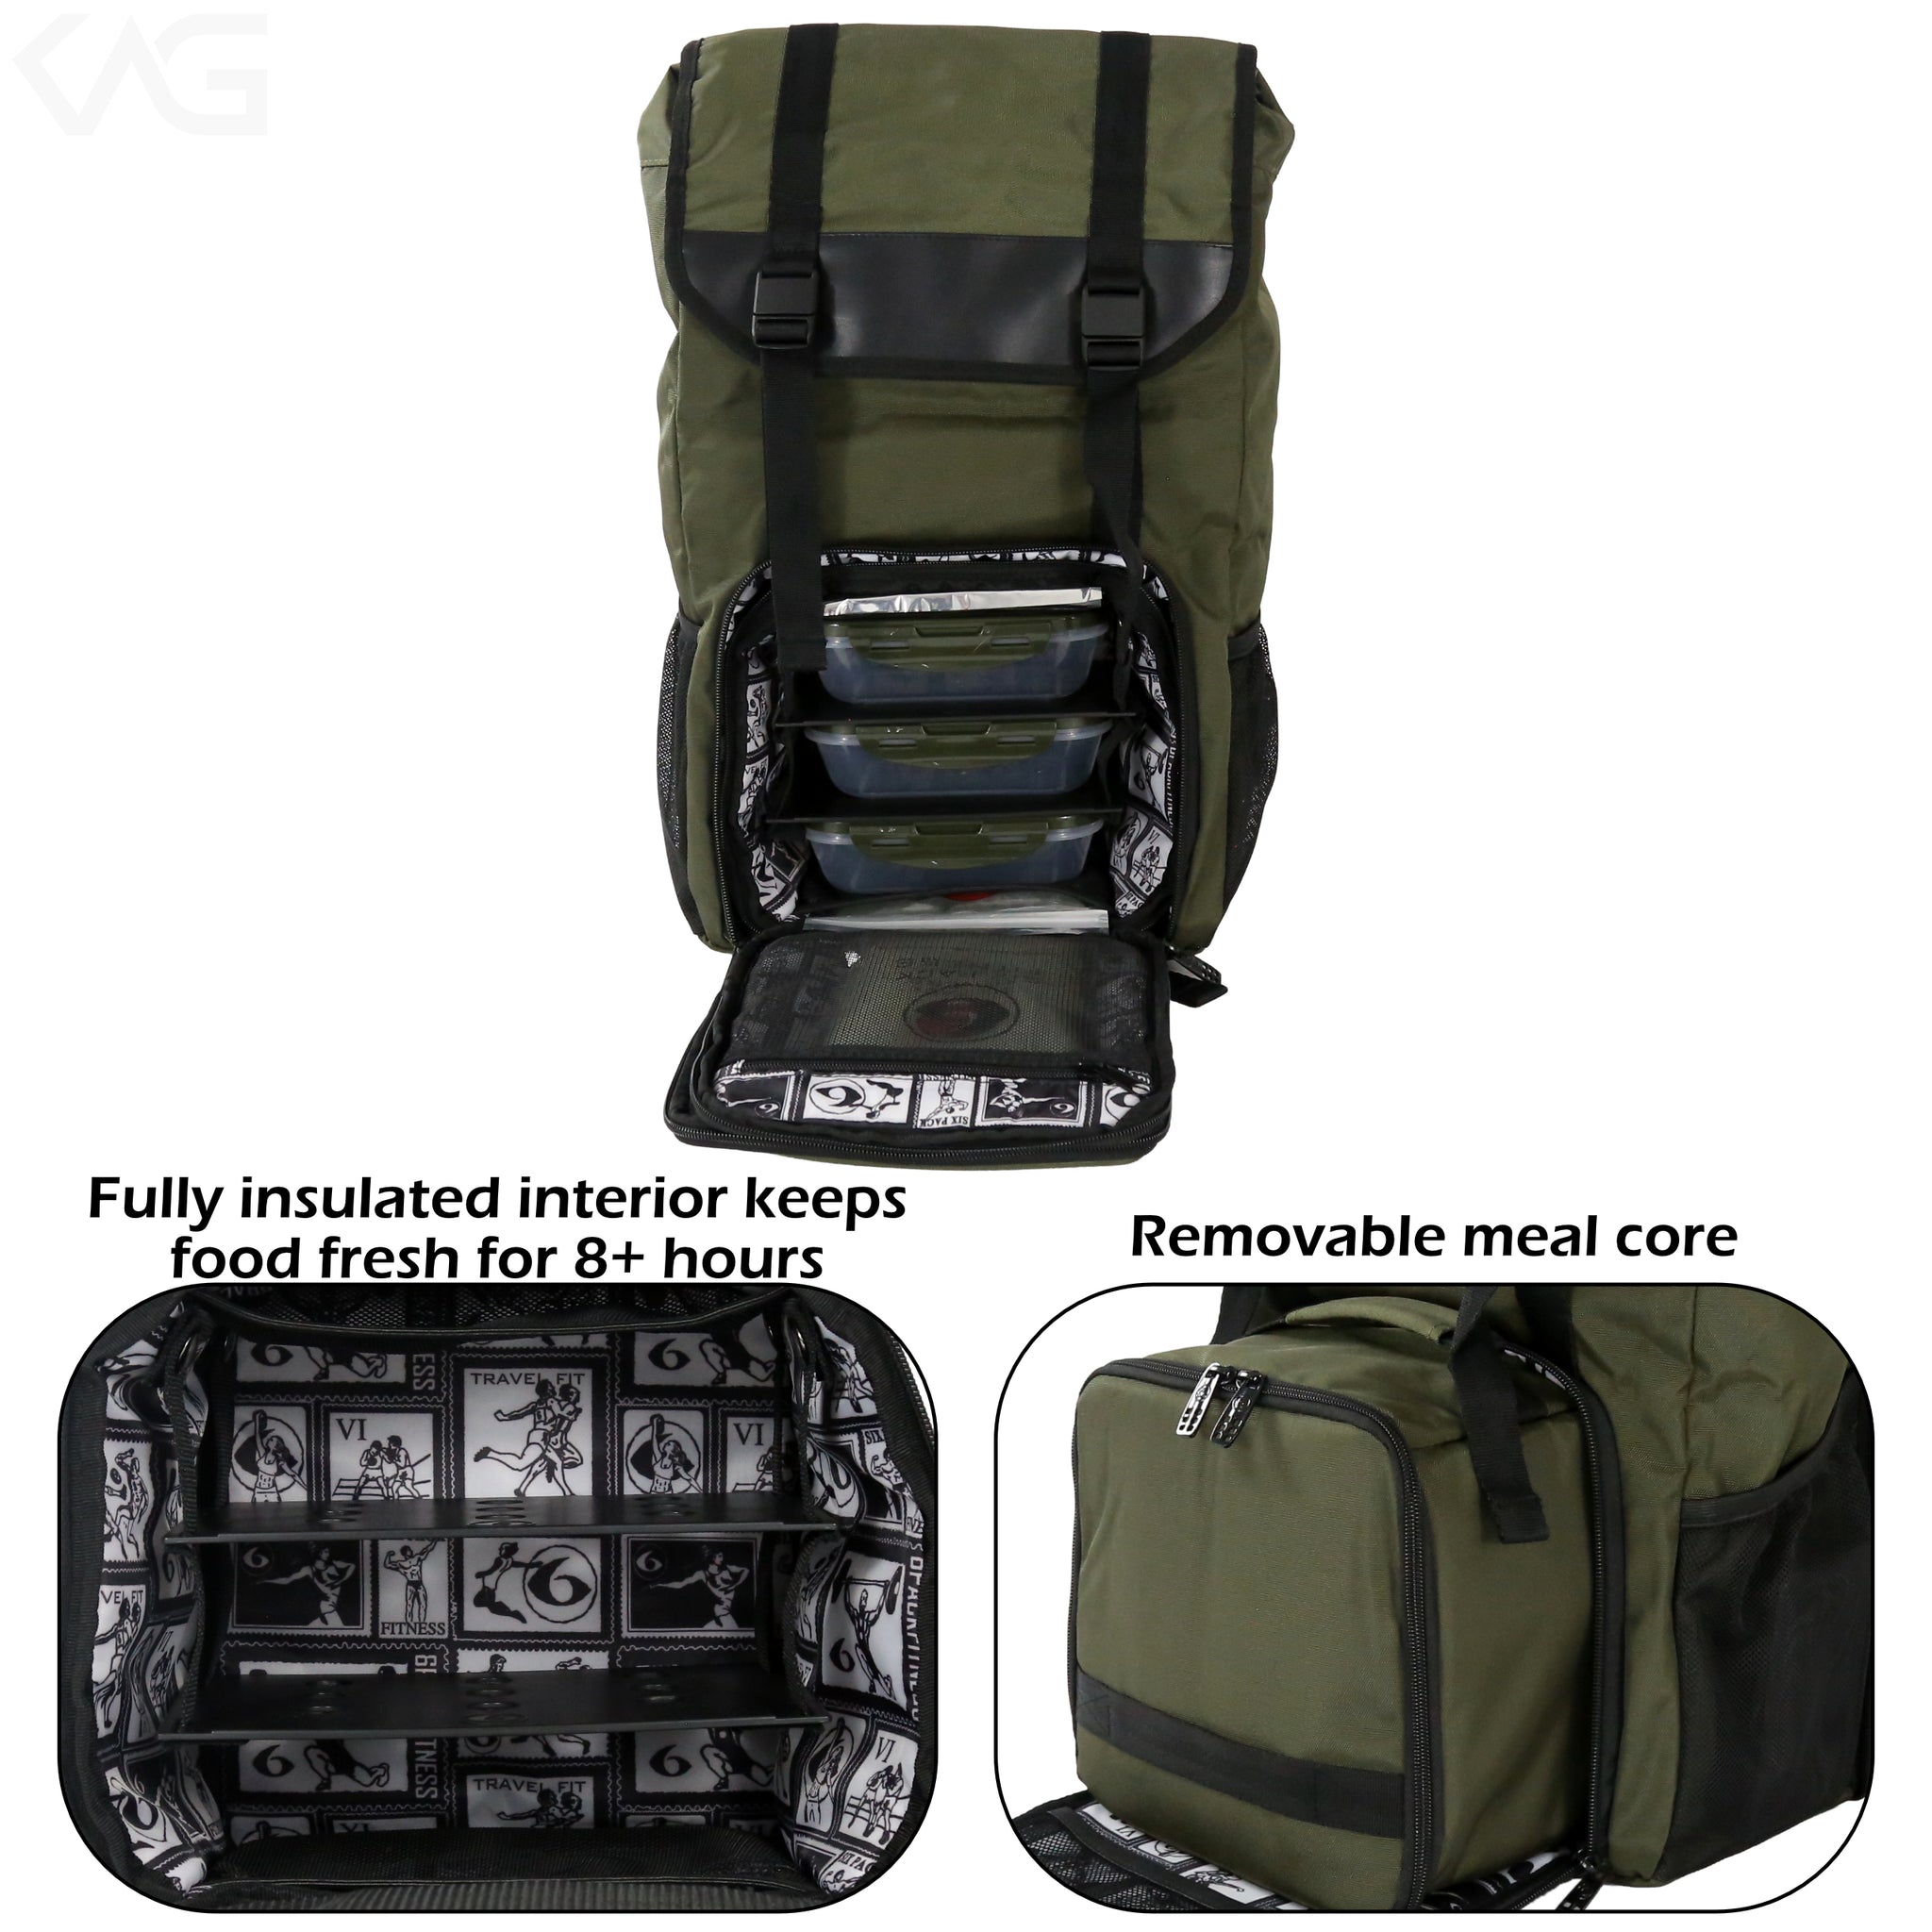 Commuter Backpack Meal Prep Management System